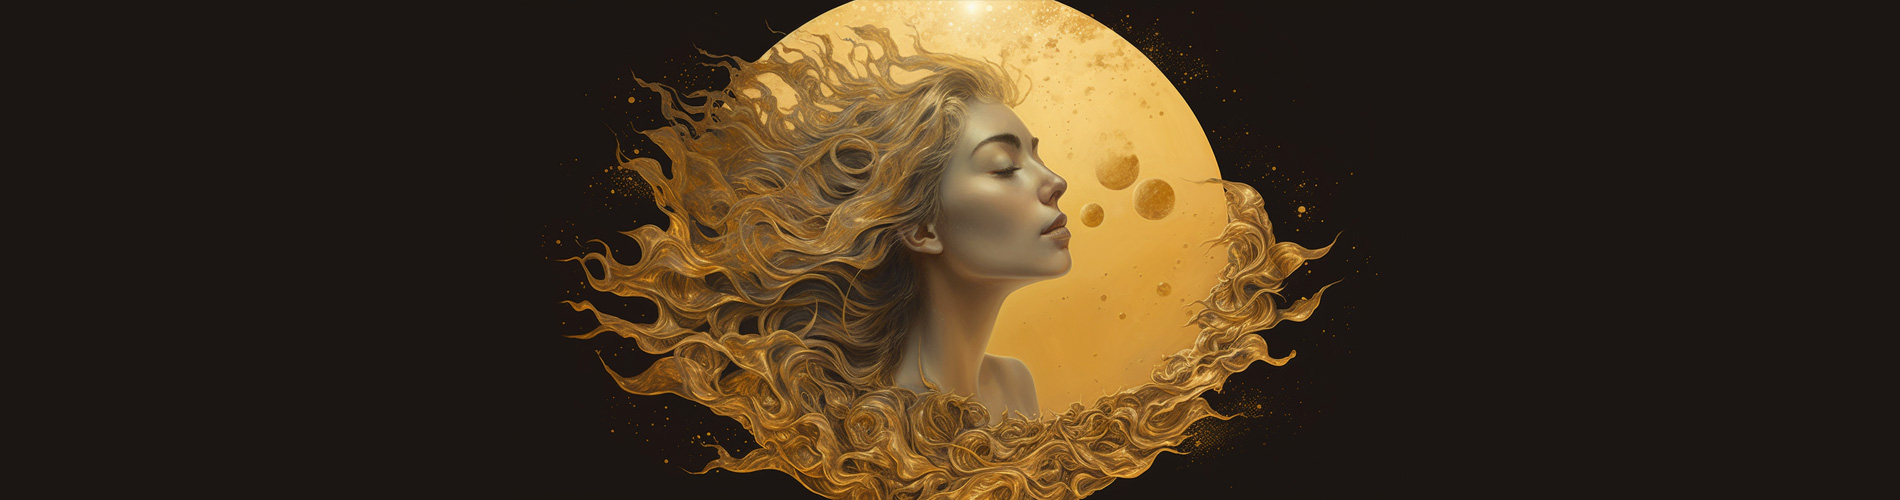 golden moon golden woman